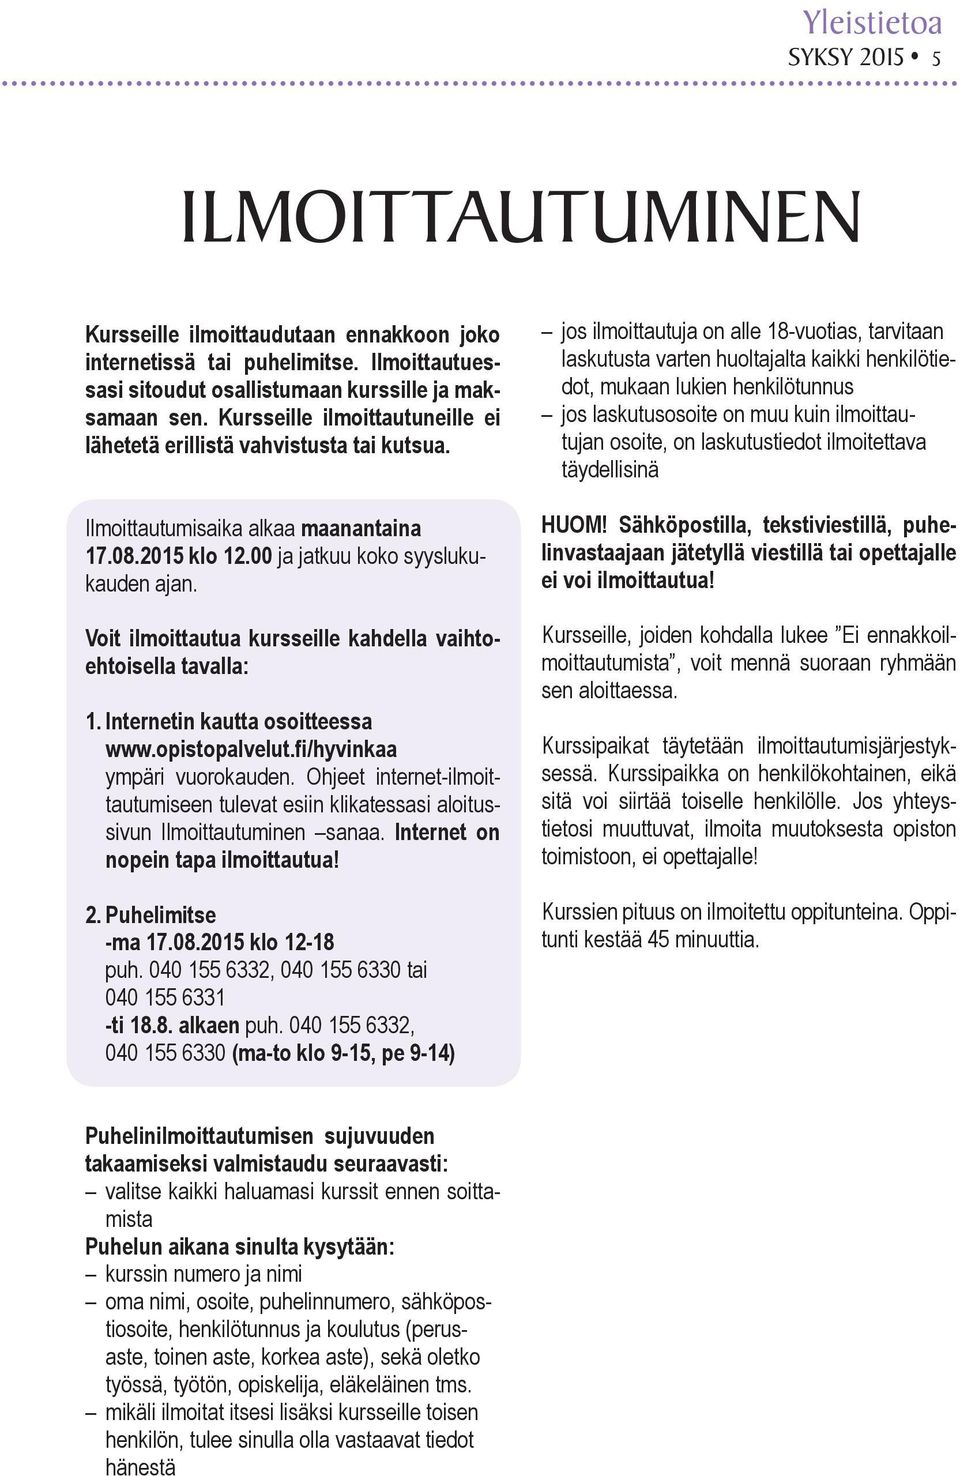 Voit ilmoittautua kursseille kahdella vaihtoehtoisella tavalla: 1. Internetin kautta osoitteessa www.opistopalvelut.fi/hyvinkaa ympäri vuorokauden.